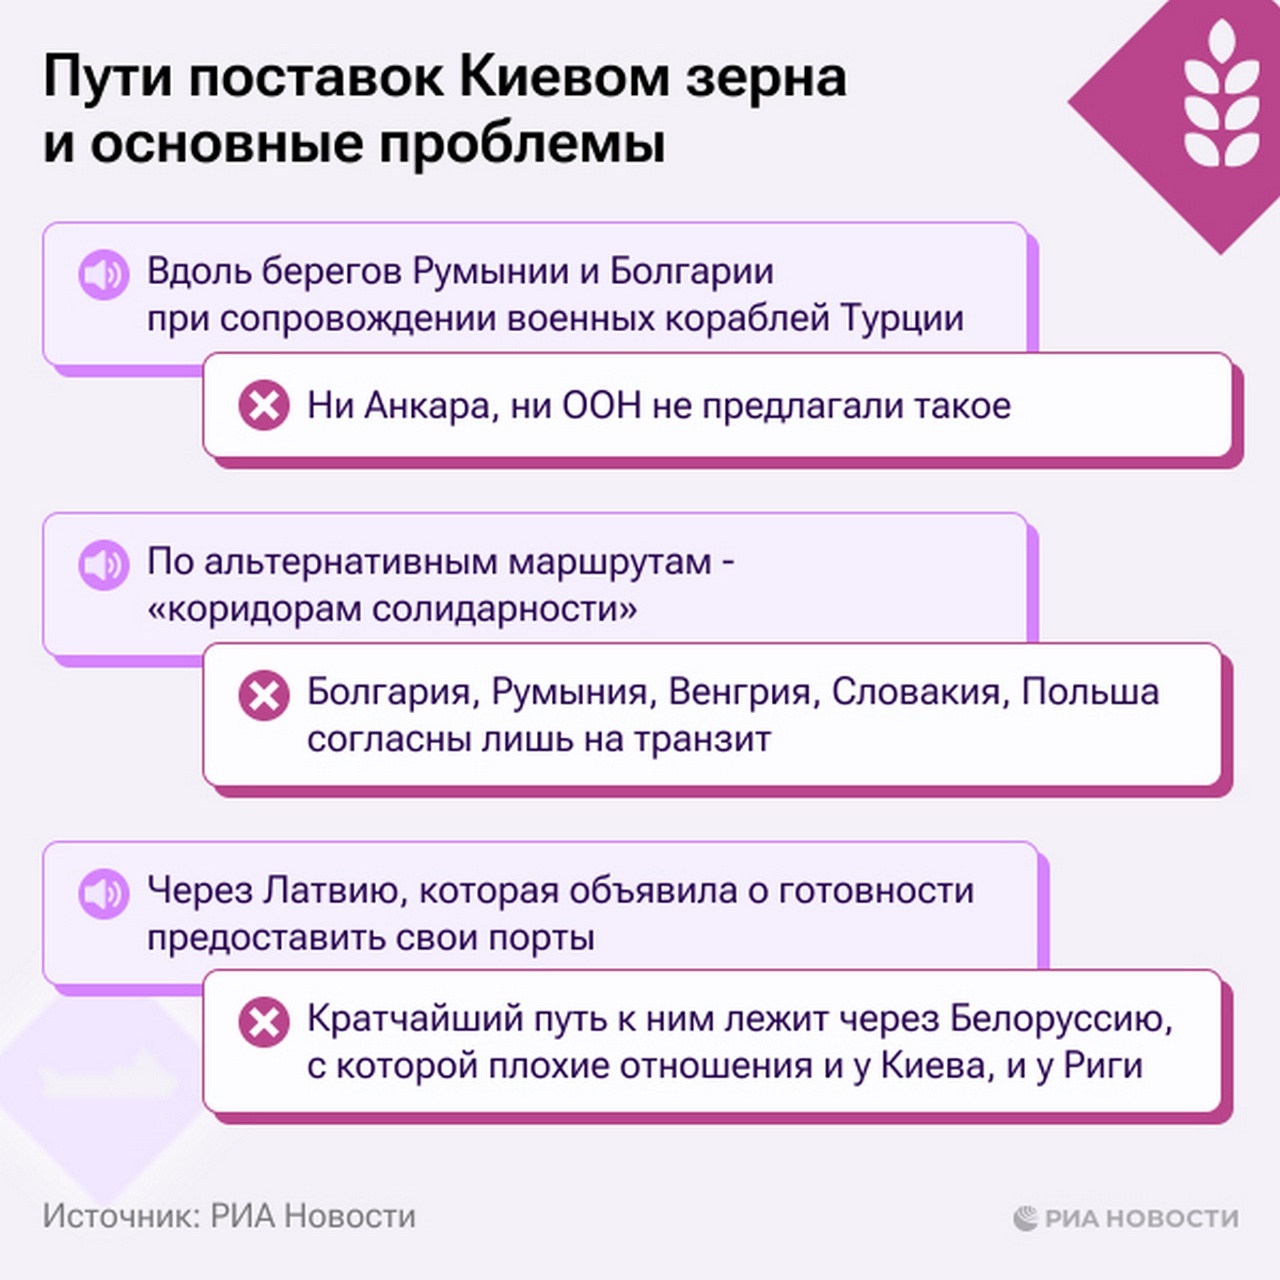 Пути поставок Киевом зерна и основные проблемы.